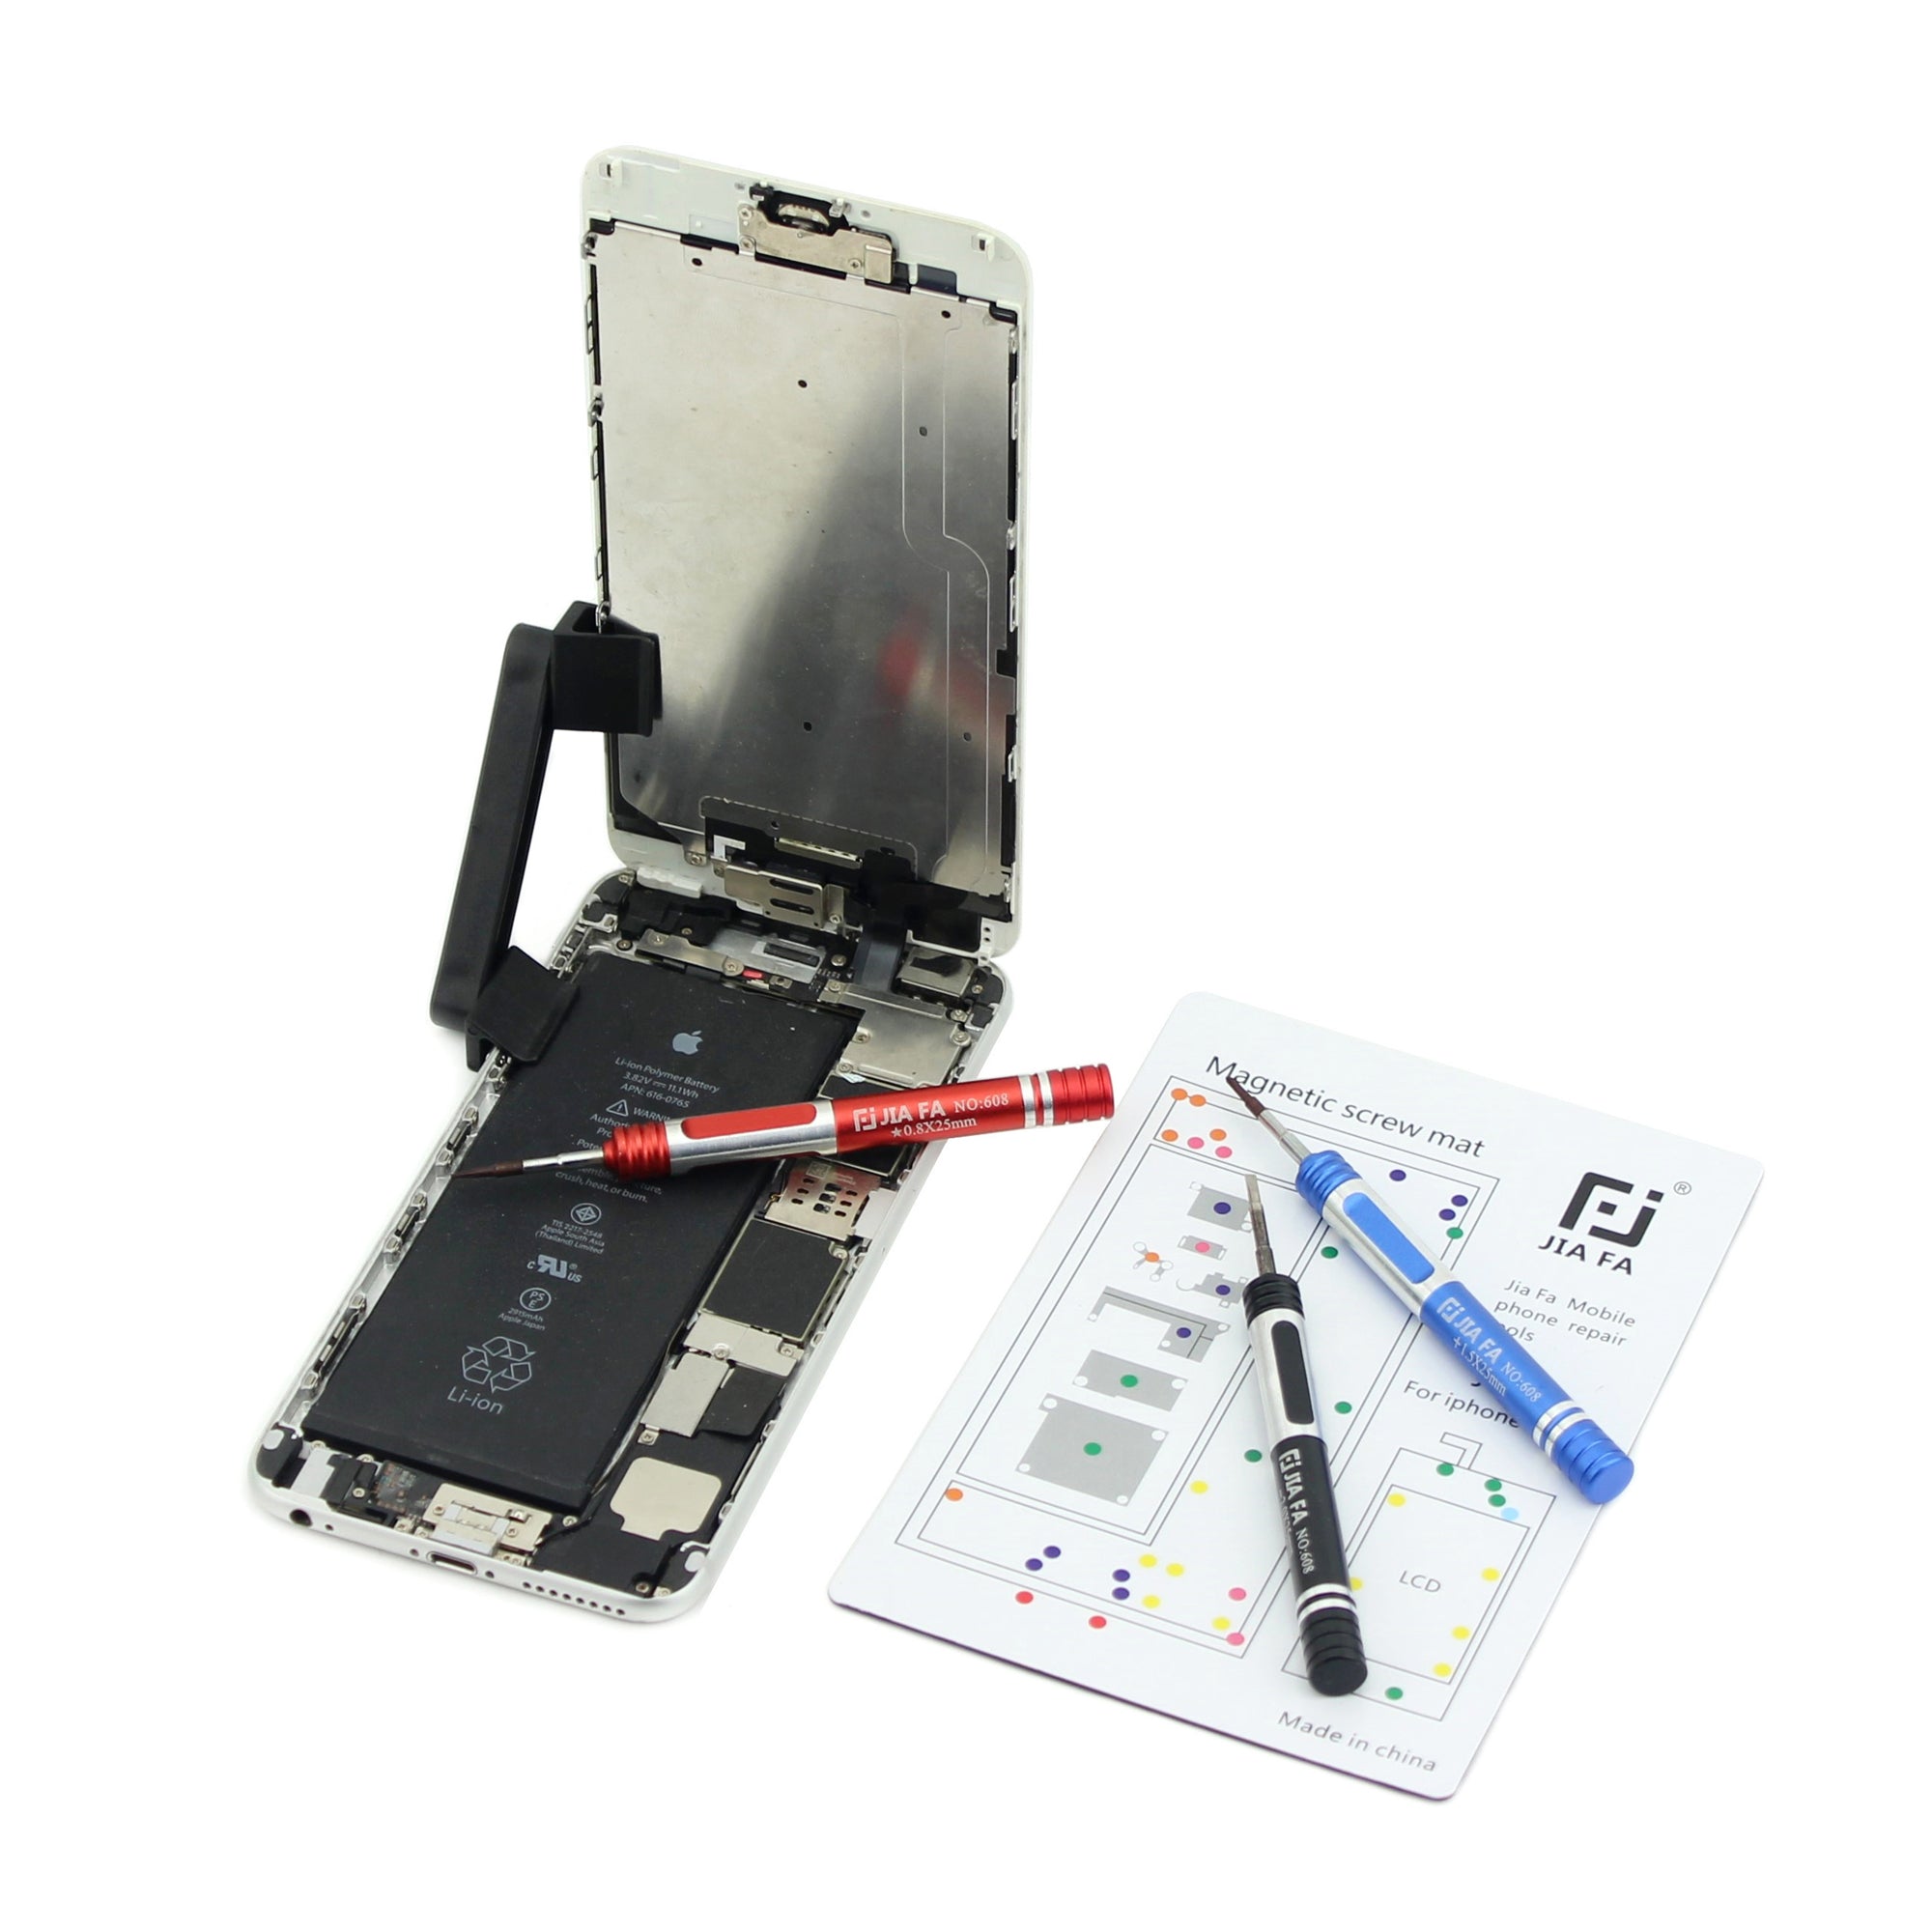 JF-870 Magnetic Screw Mat Mobile Phone Repair Tool for iPhone 6s Plus 5.5-inch